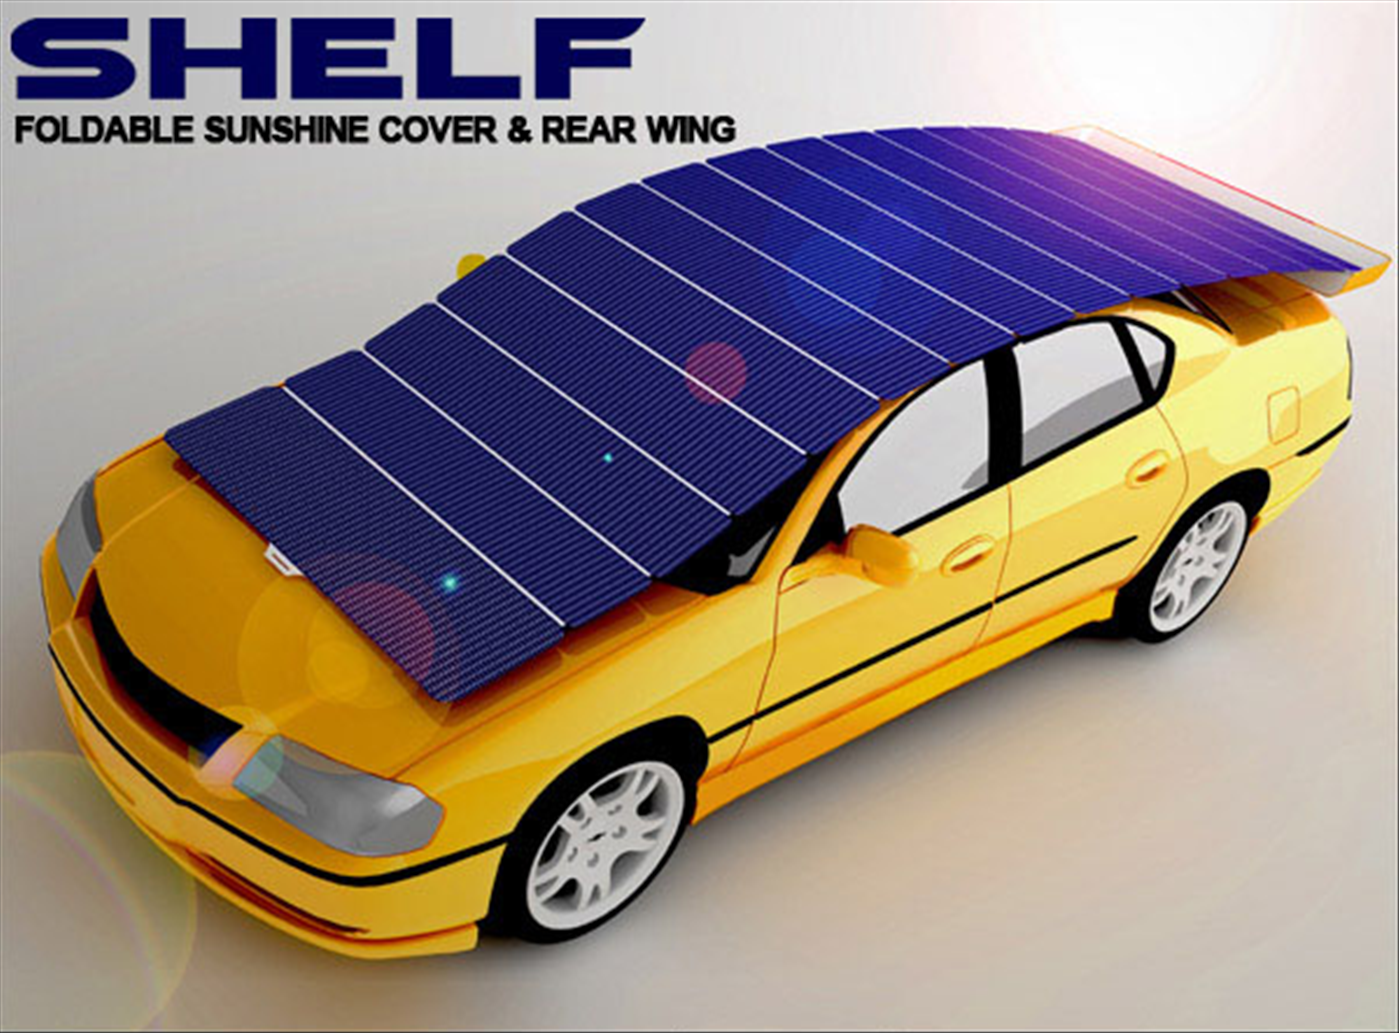 couverture solaire1 Tunner votre voiture de façon utile et ecolo ... 